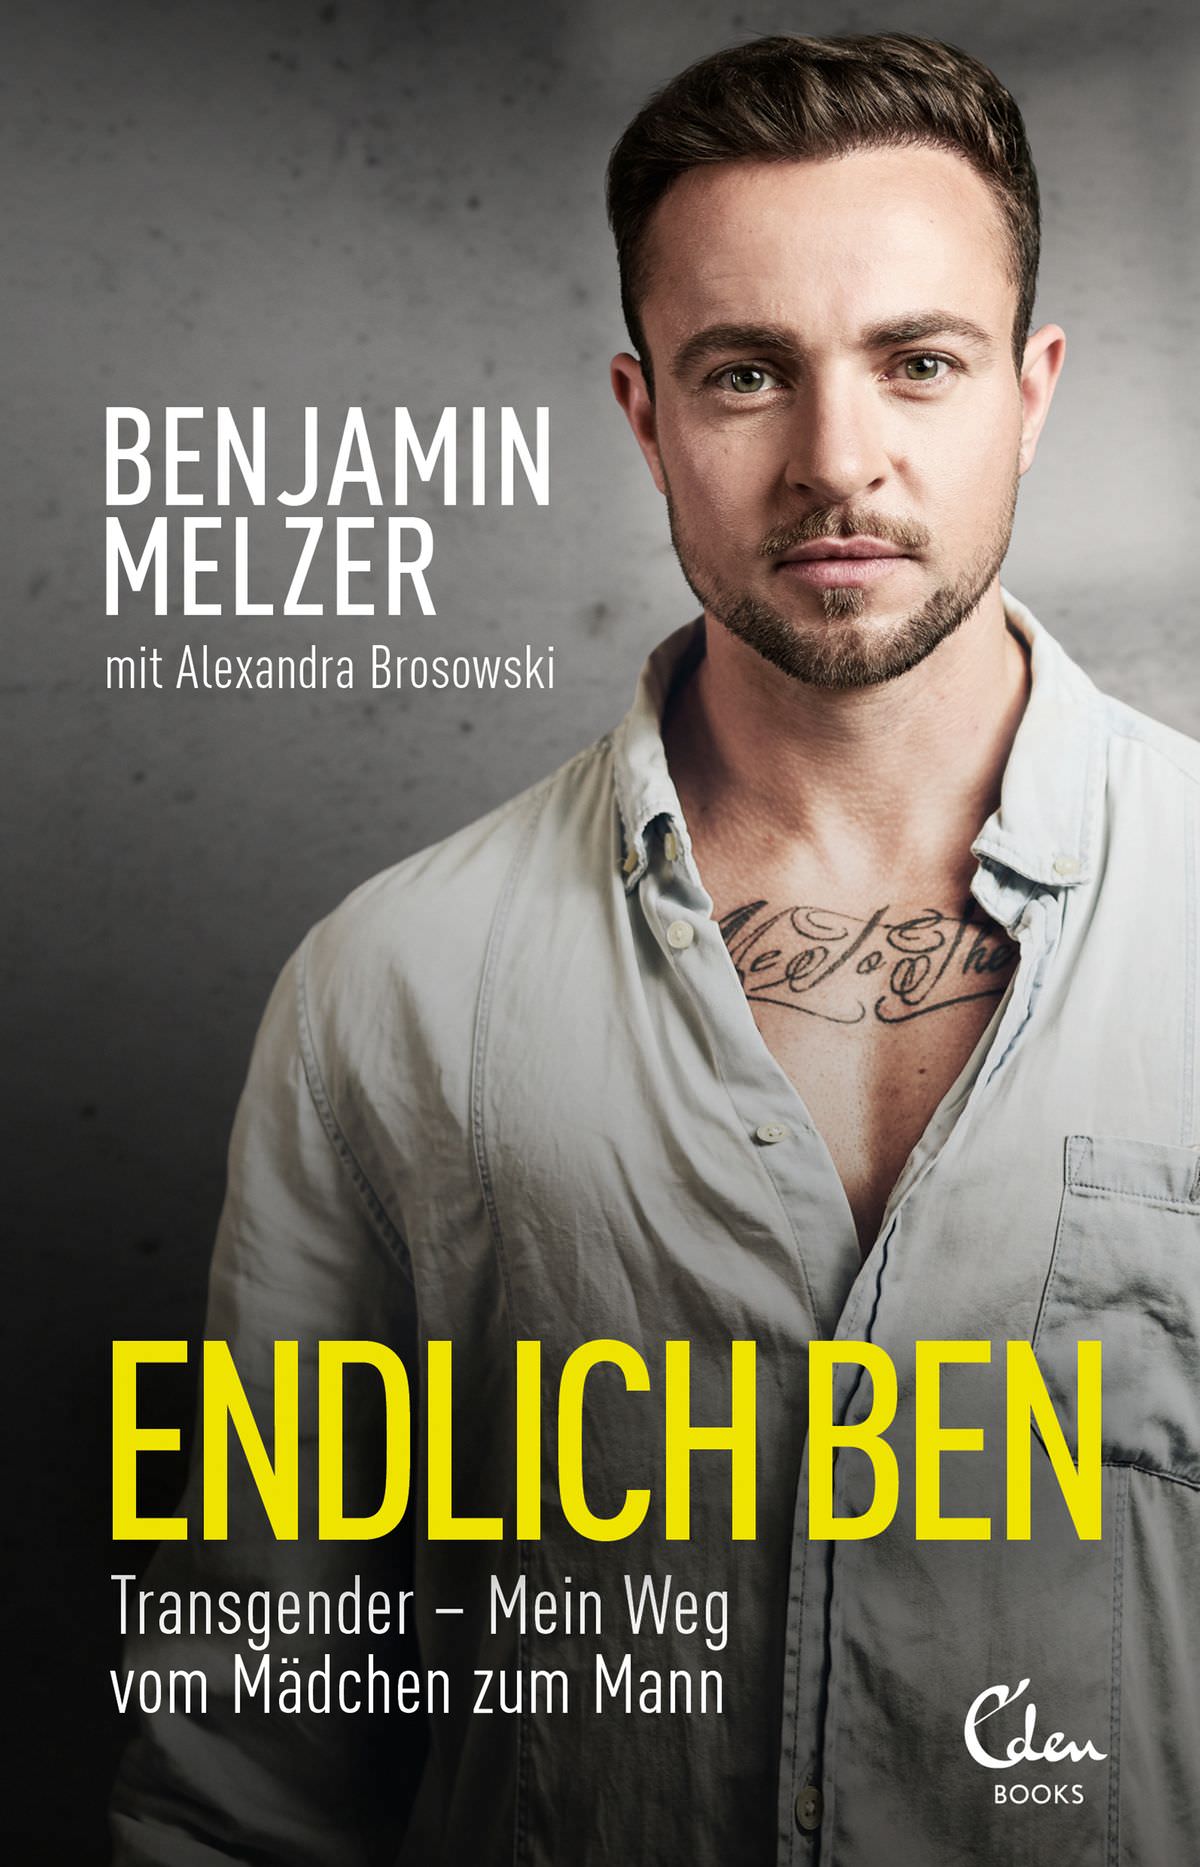 Benjamin Melzer: Endlich Ben